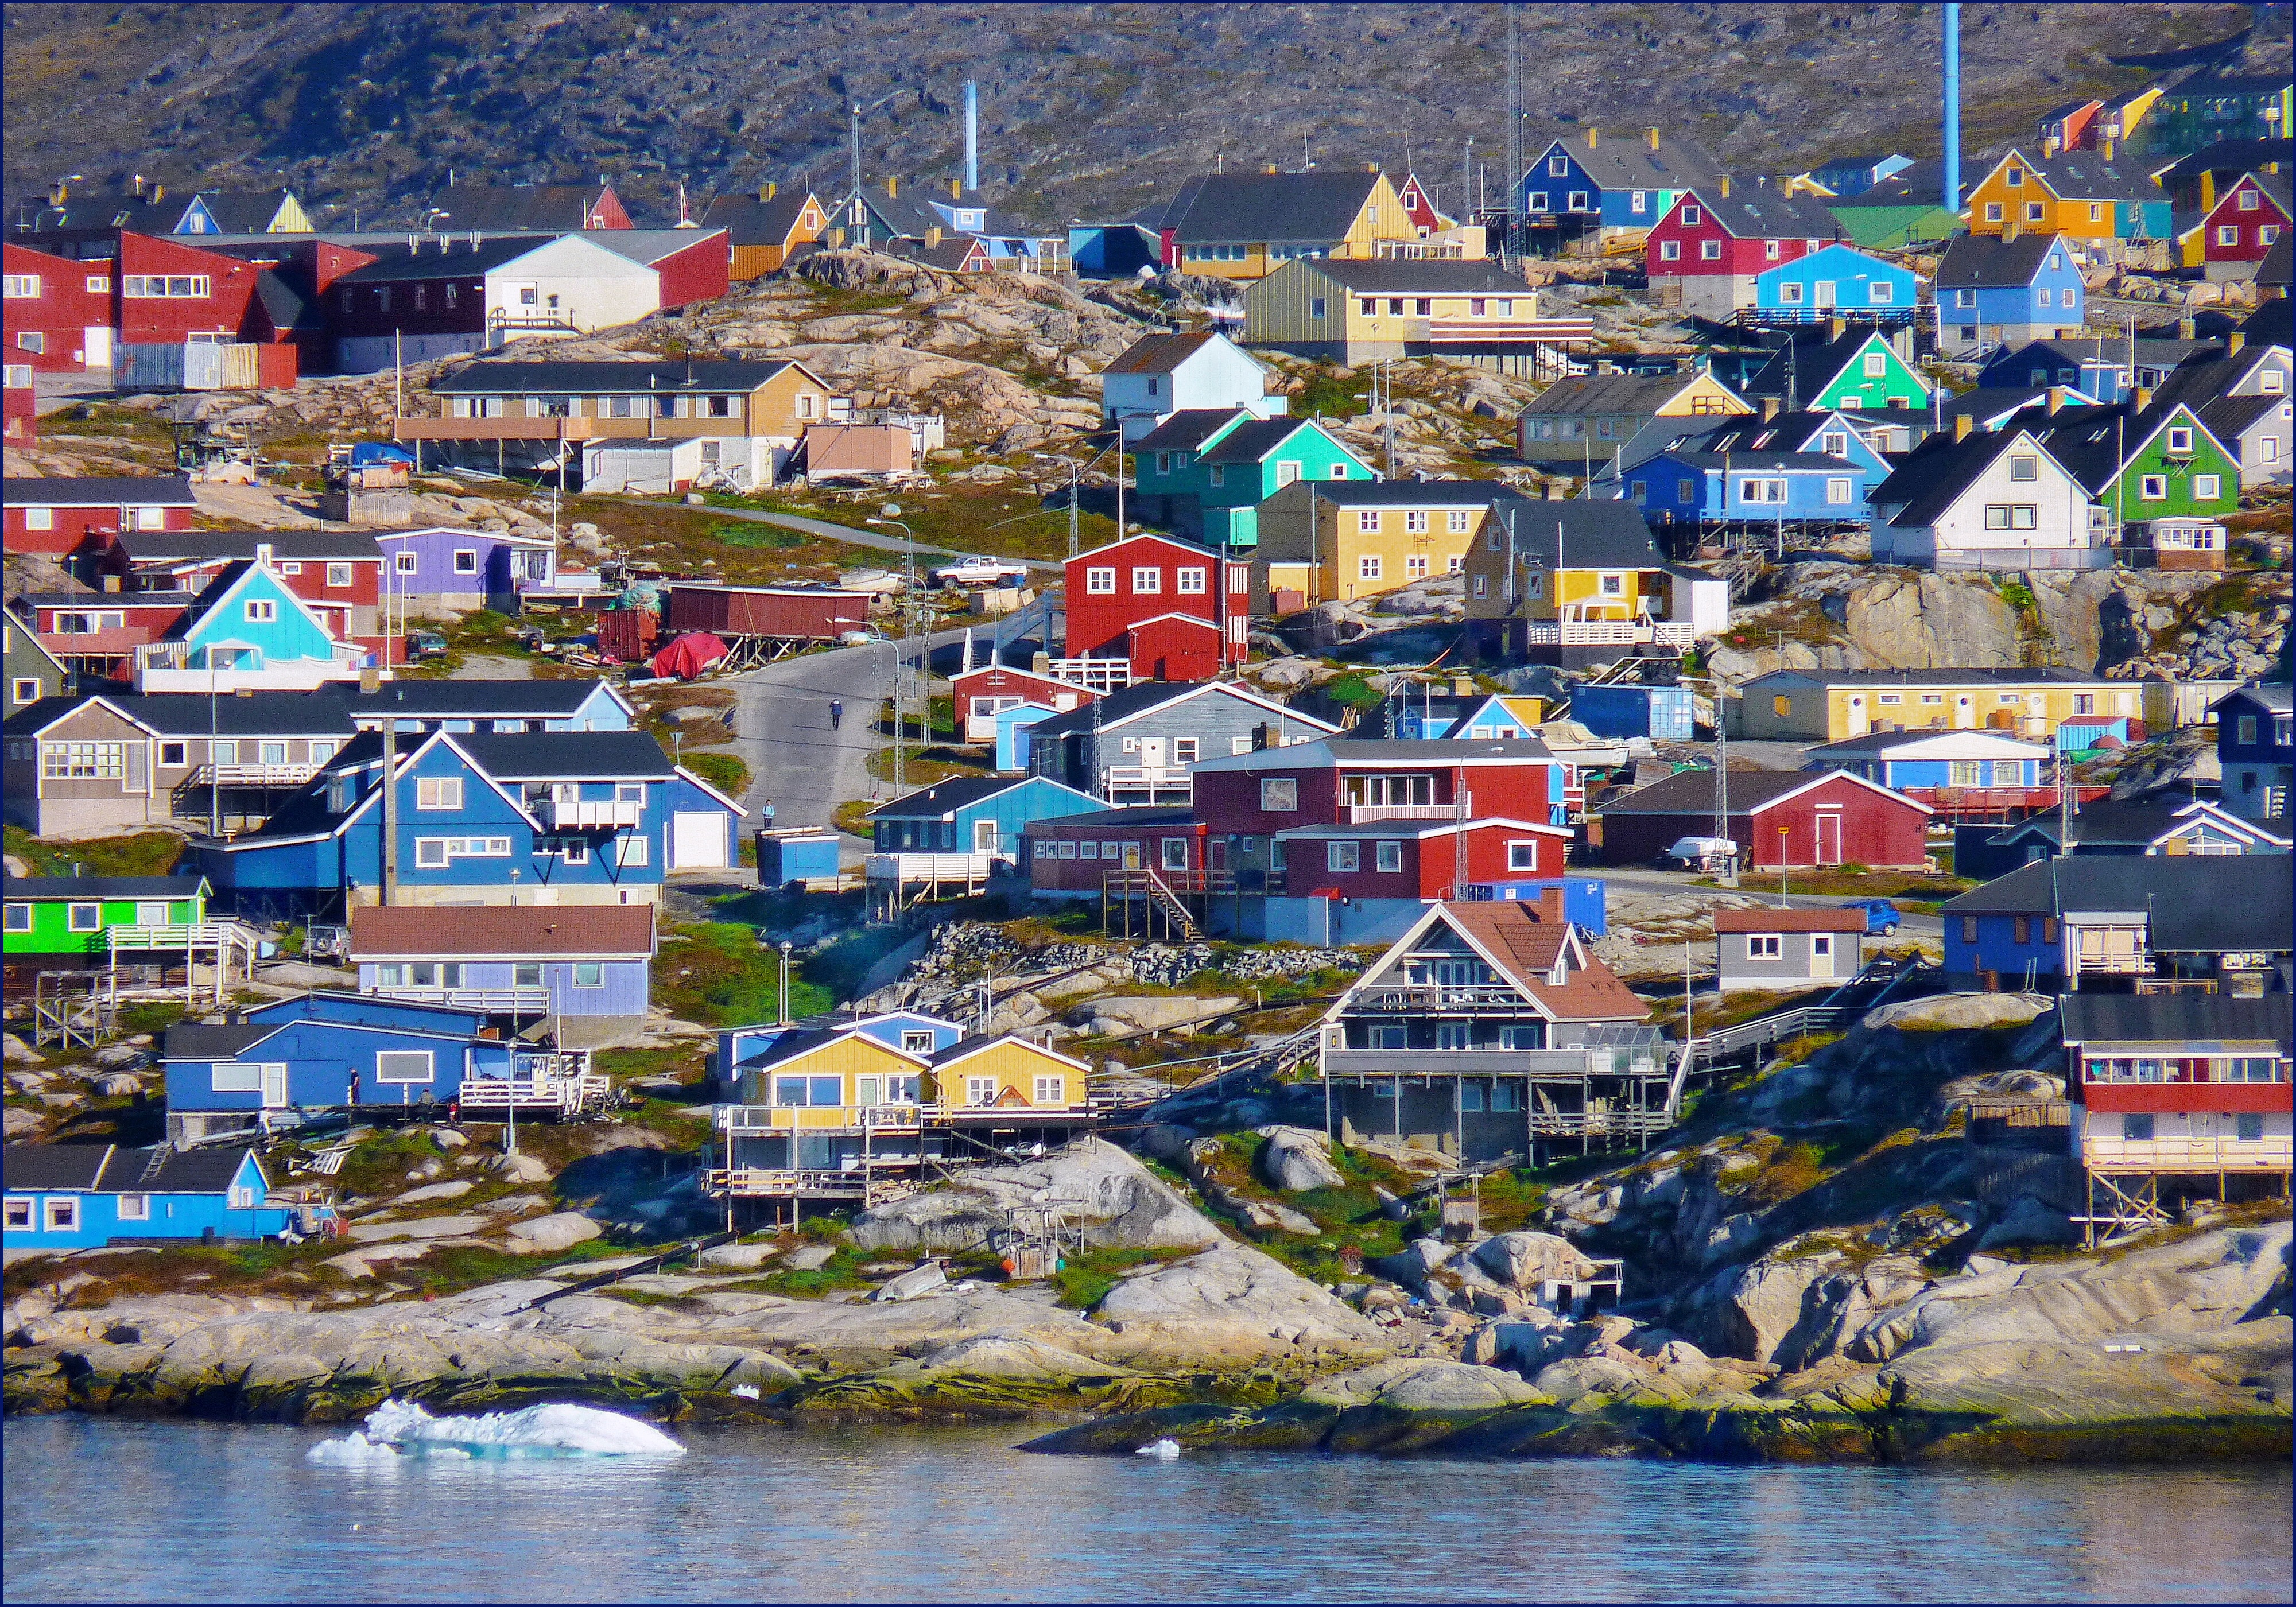 A festői Ilulissat városka Grönland szigetén: a 60 centis vízszintemelkedés nekik elég rossz hír